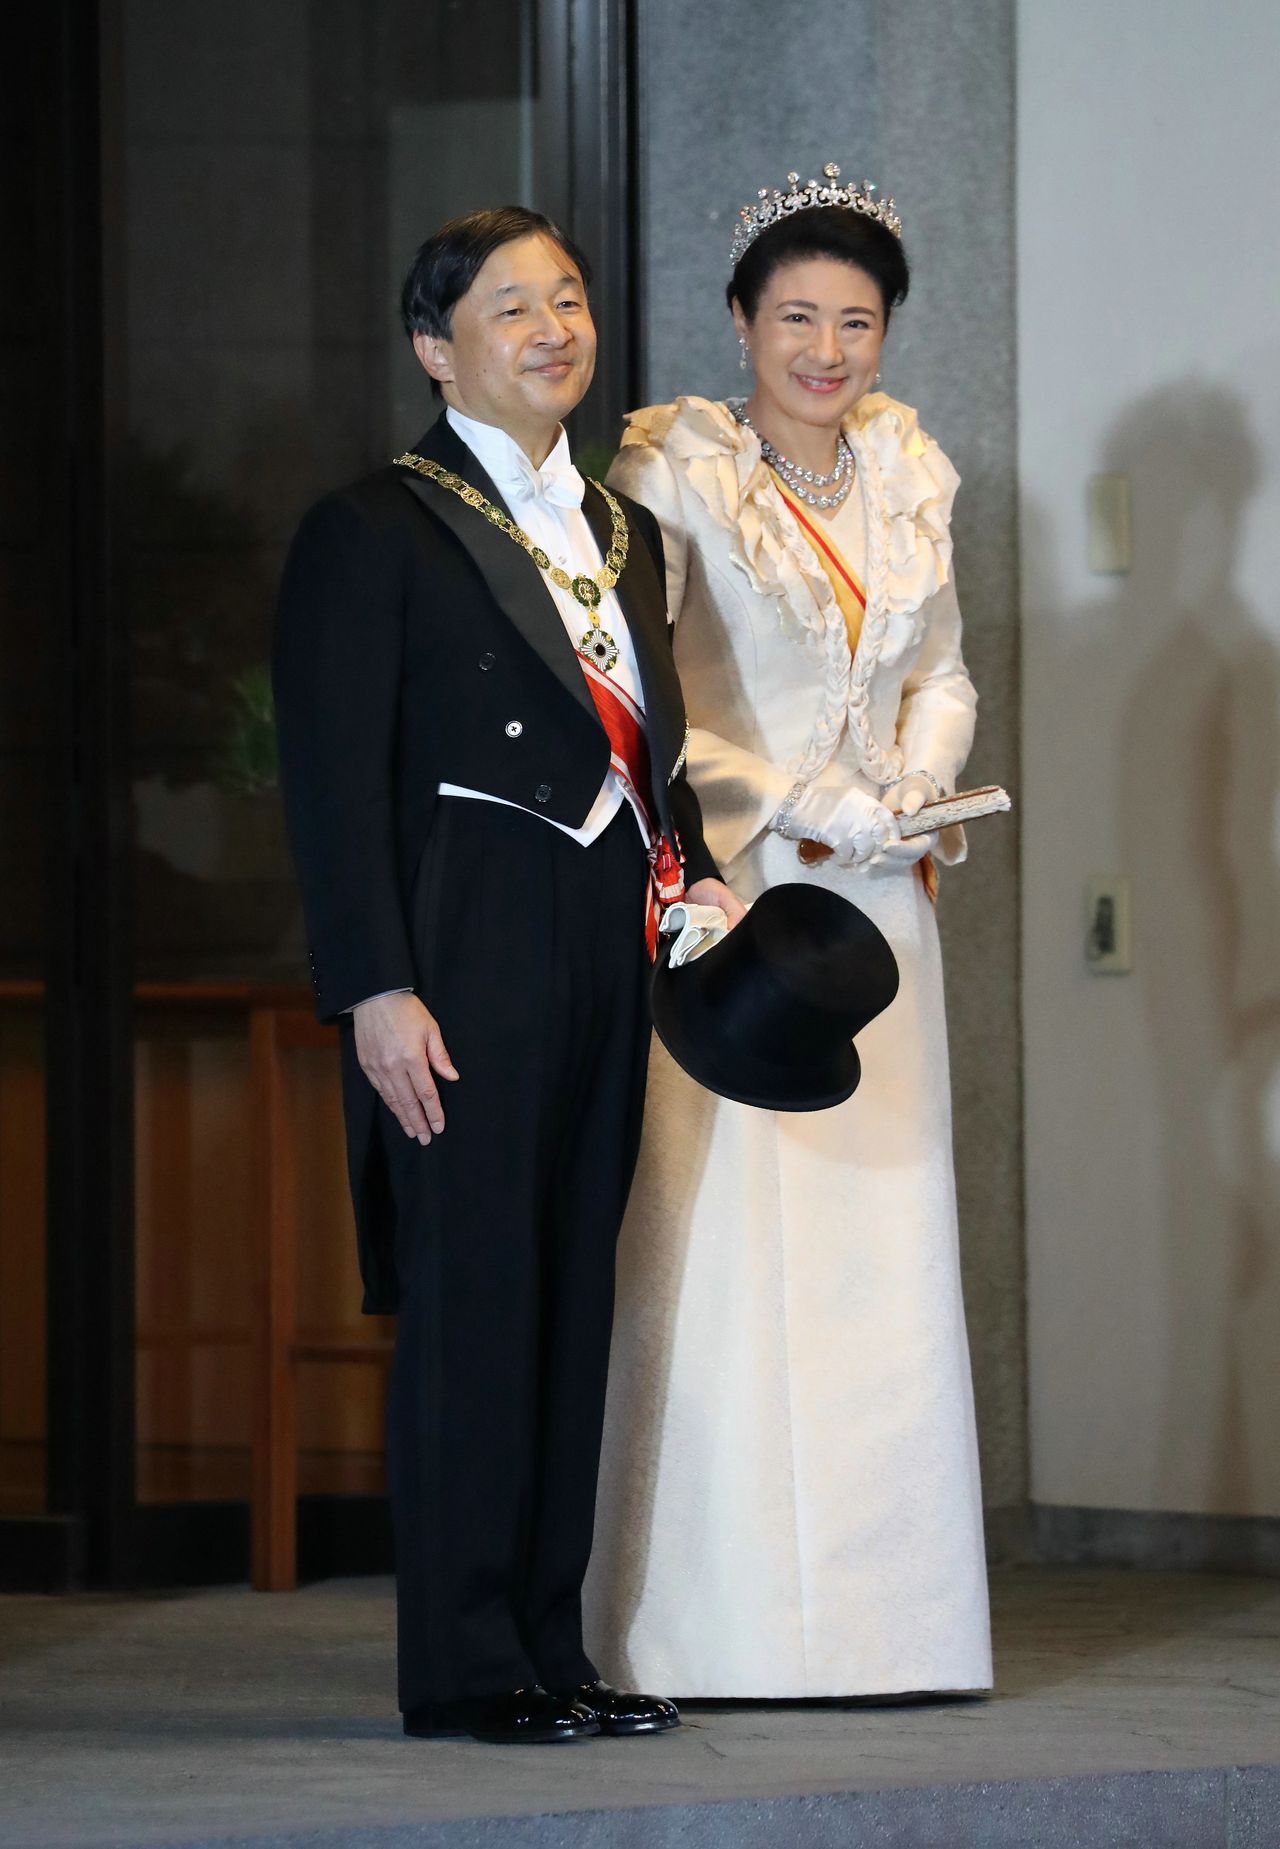 Le couple impérial est arrivé au palais d’Akasaka. L’hymne national du Japon, Kimi ga yo, est entamé.